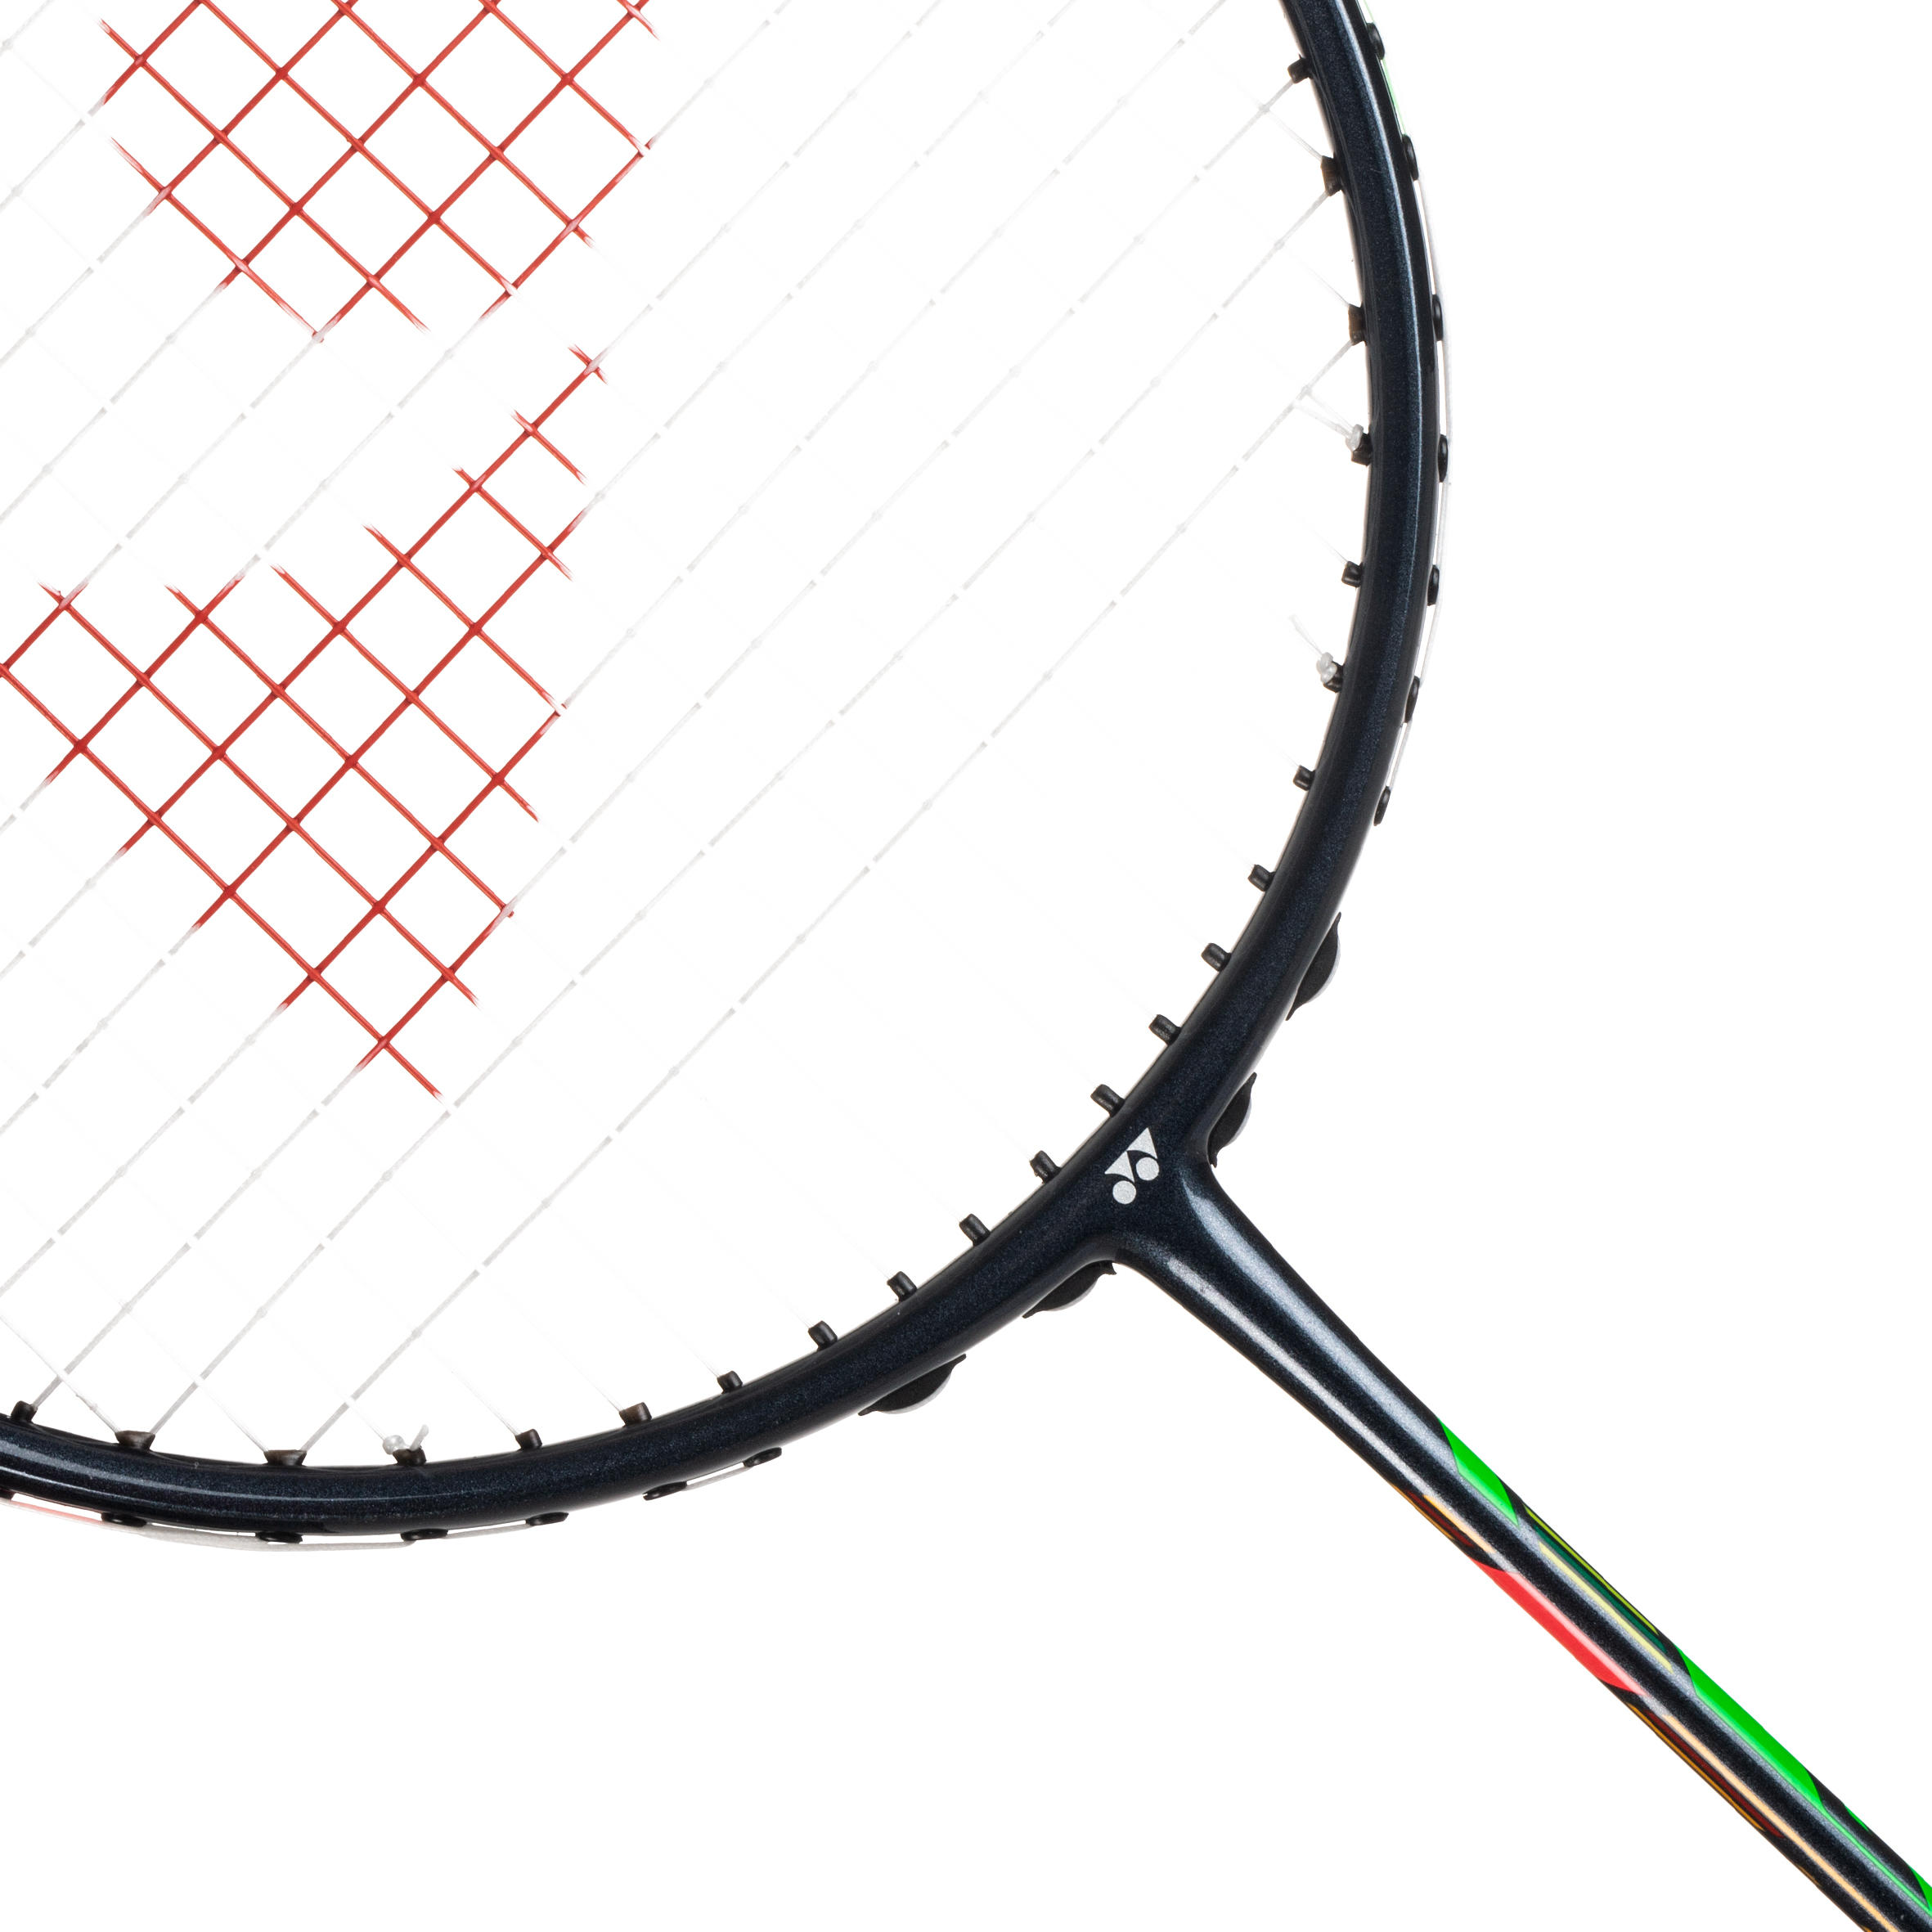 Adult Badminton Racket Duora 55 6/13